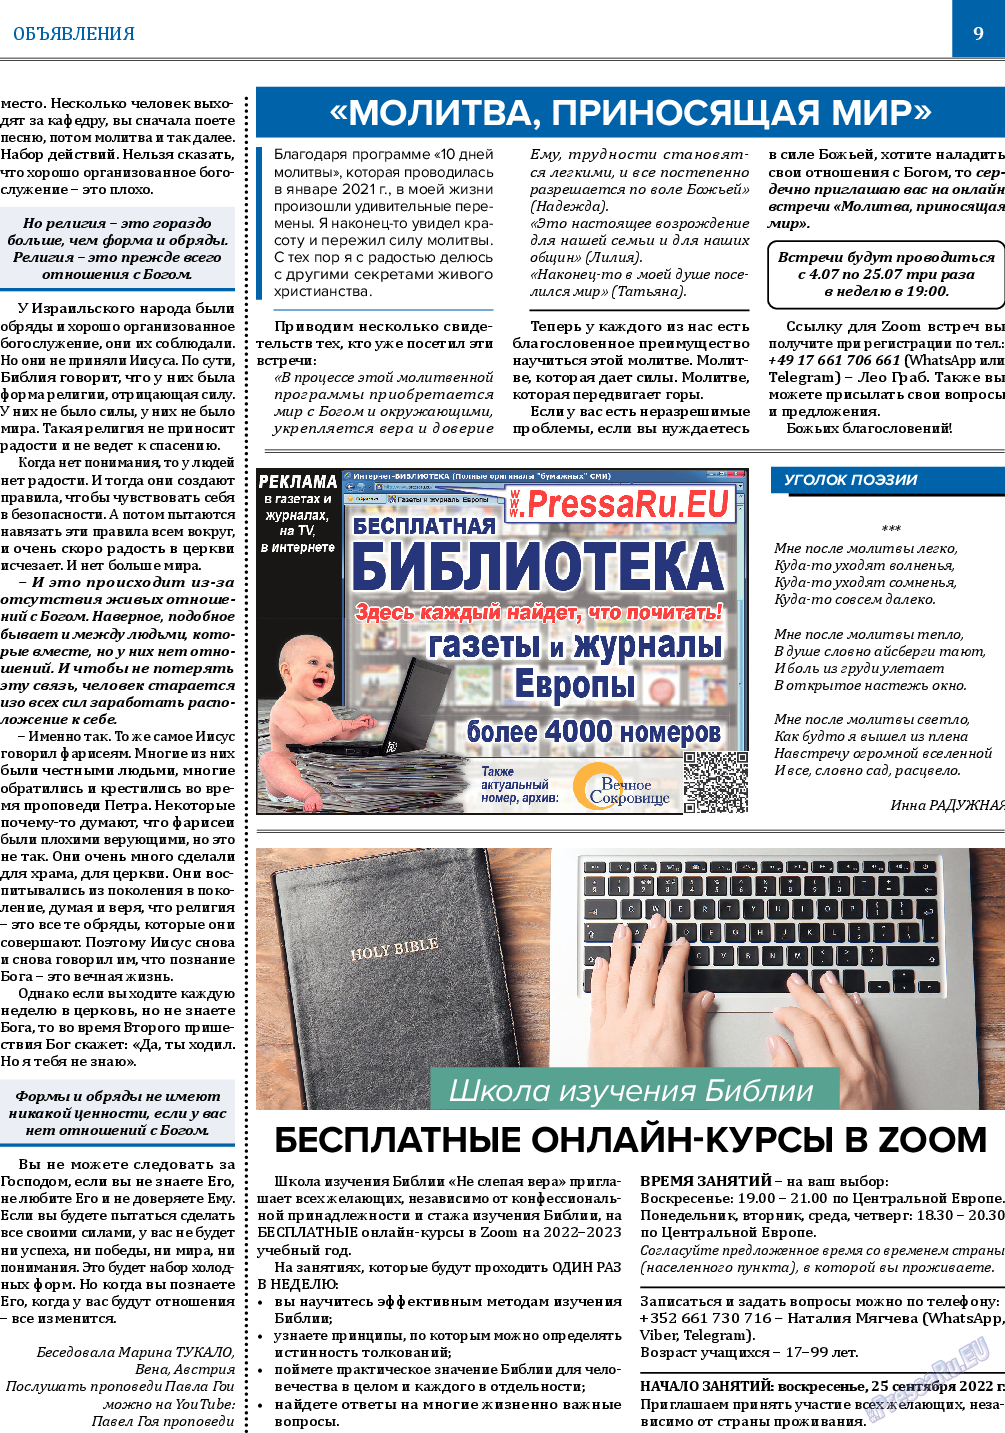 Вечное сокровище, газета. 2022 №3 стр.9